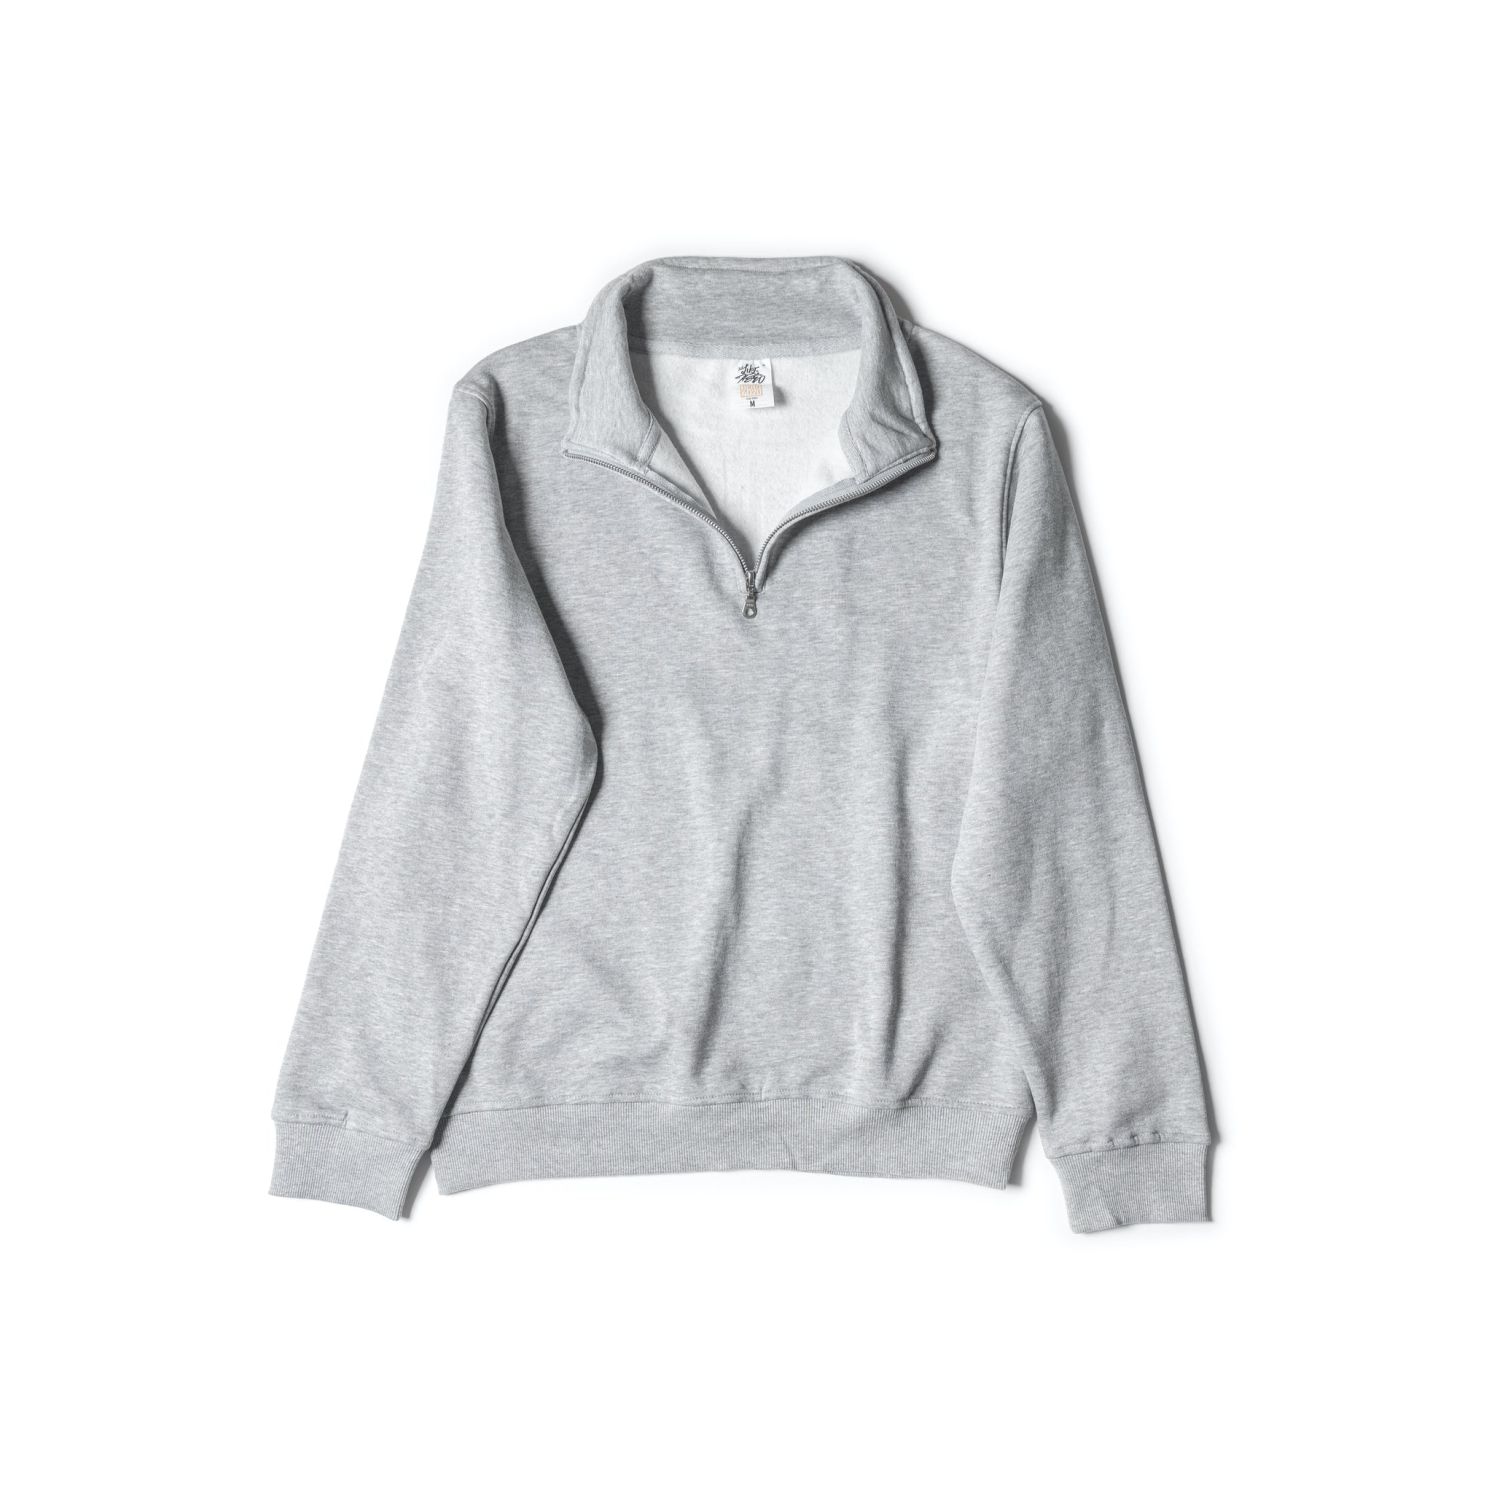 Just Like Hero Quarter-Zip Sweatshirt #4020 Sport Grey